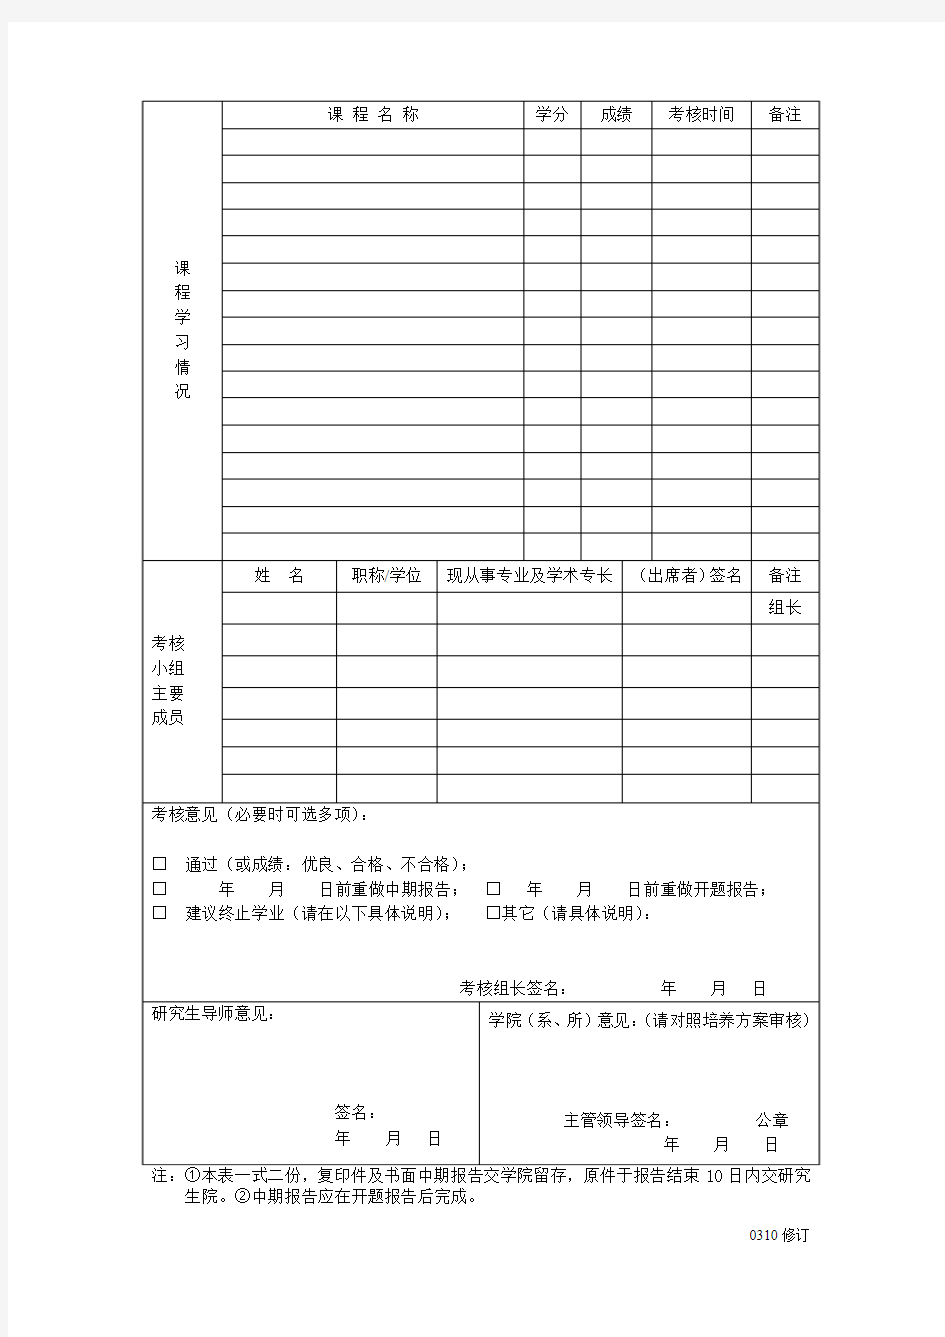 天津科技大学硕士研究生中期考核与筛选登记表